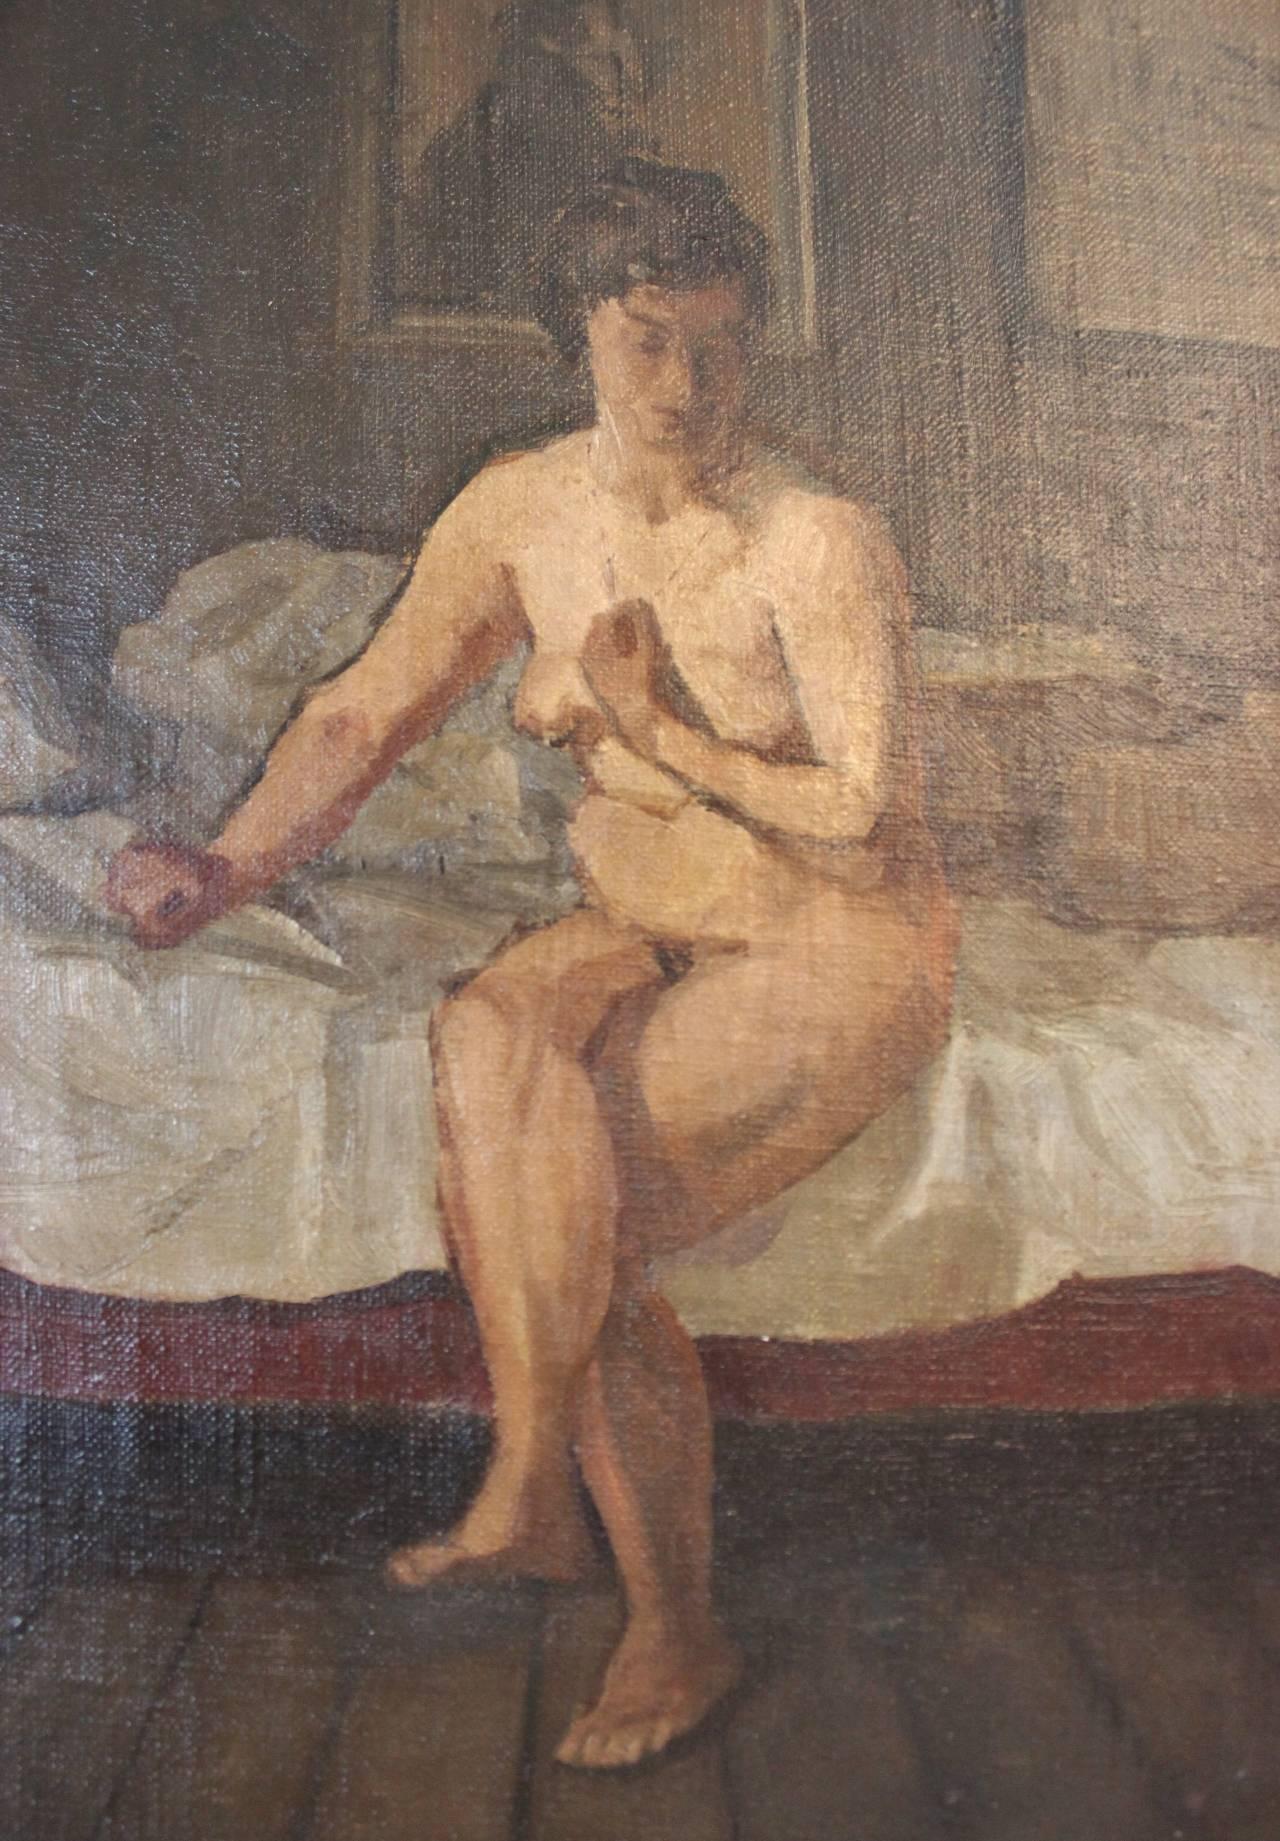 naked women art